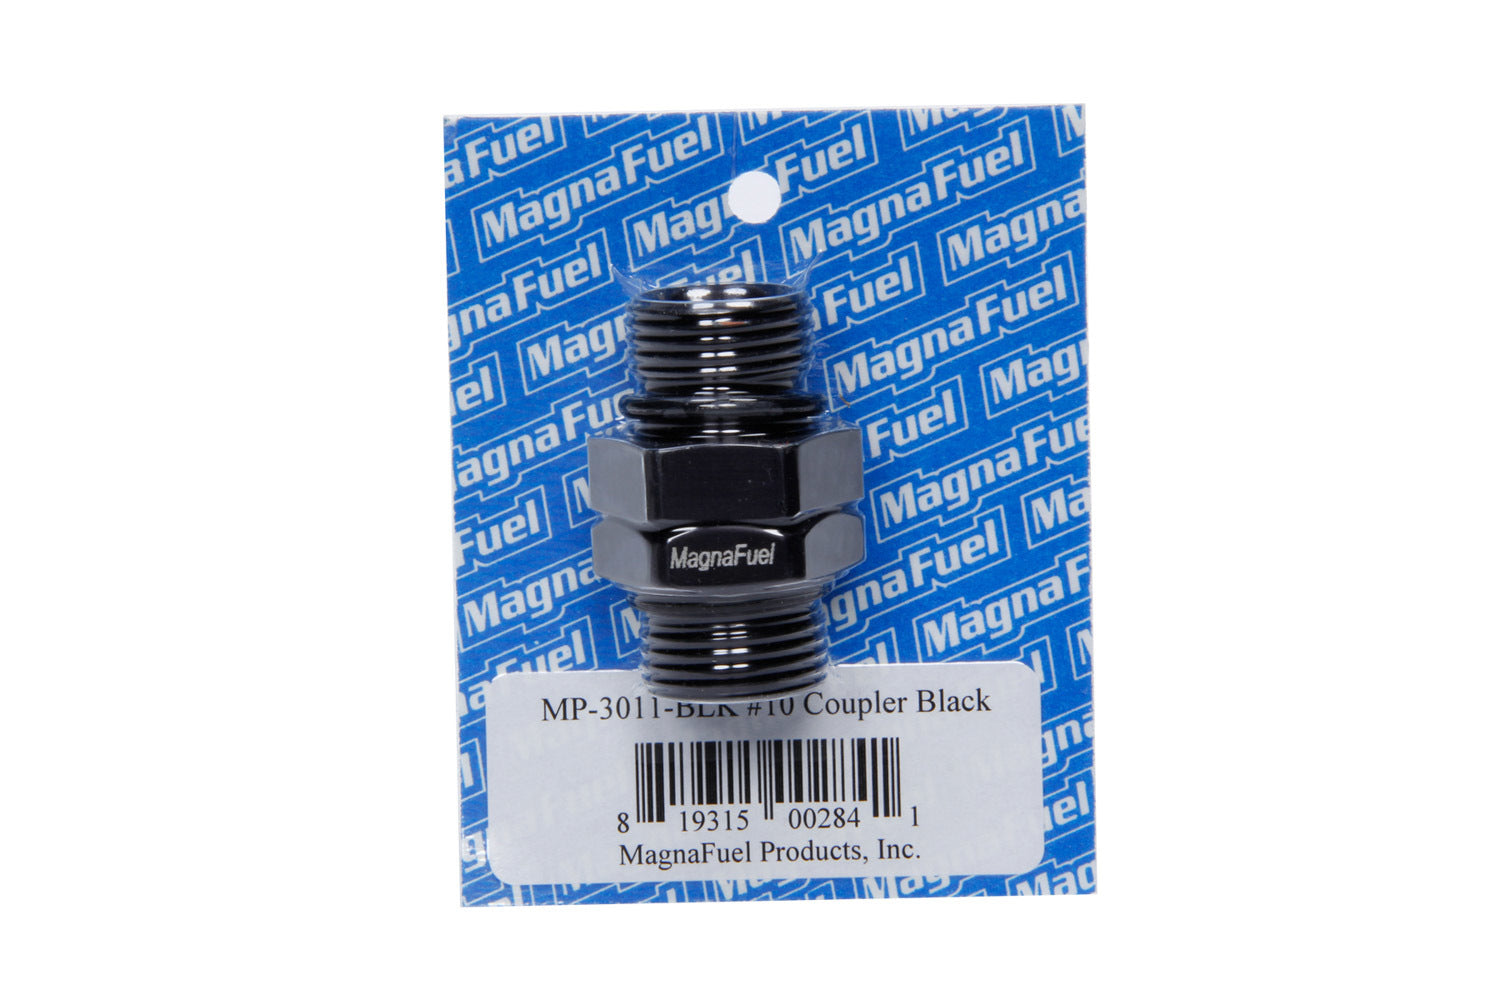 Magnafuel/Magnaflow Fuel Systems #10 Coupler Fitting Black MRFMP-3011-BLK